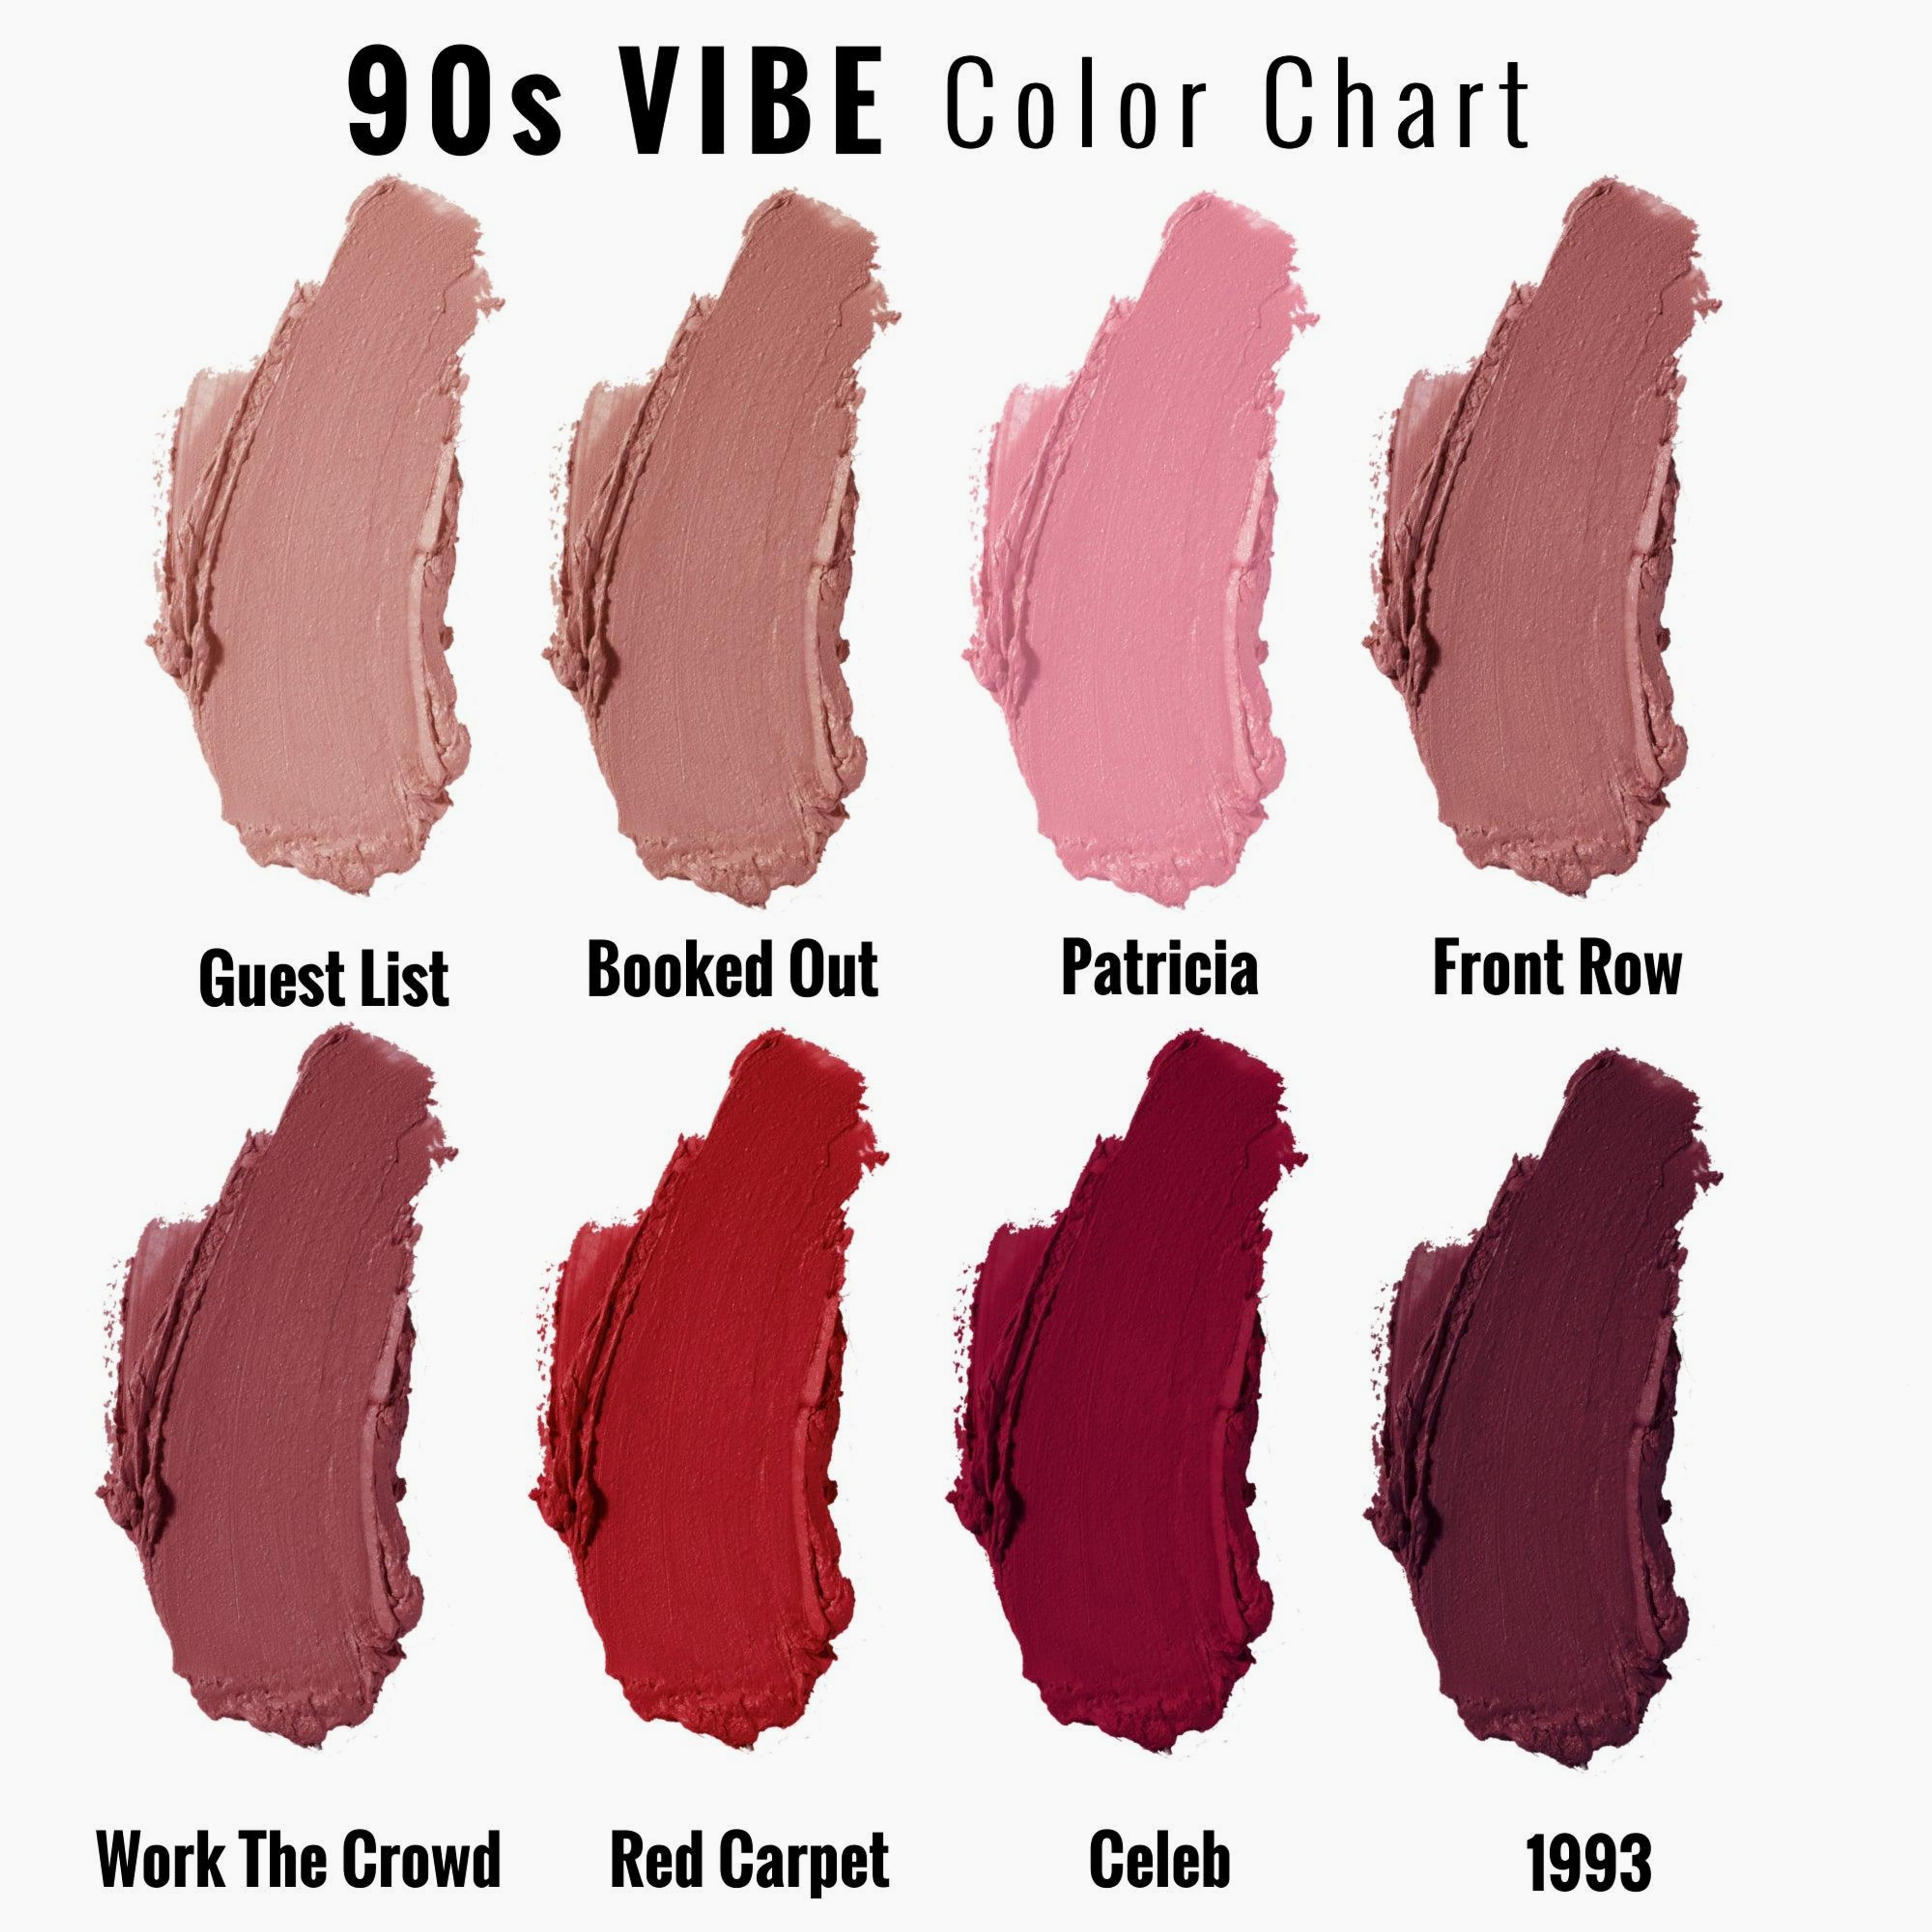 Red Carpet | A Classic True Red Matte Lipstick